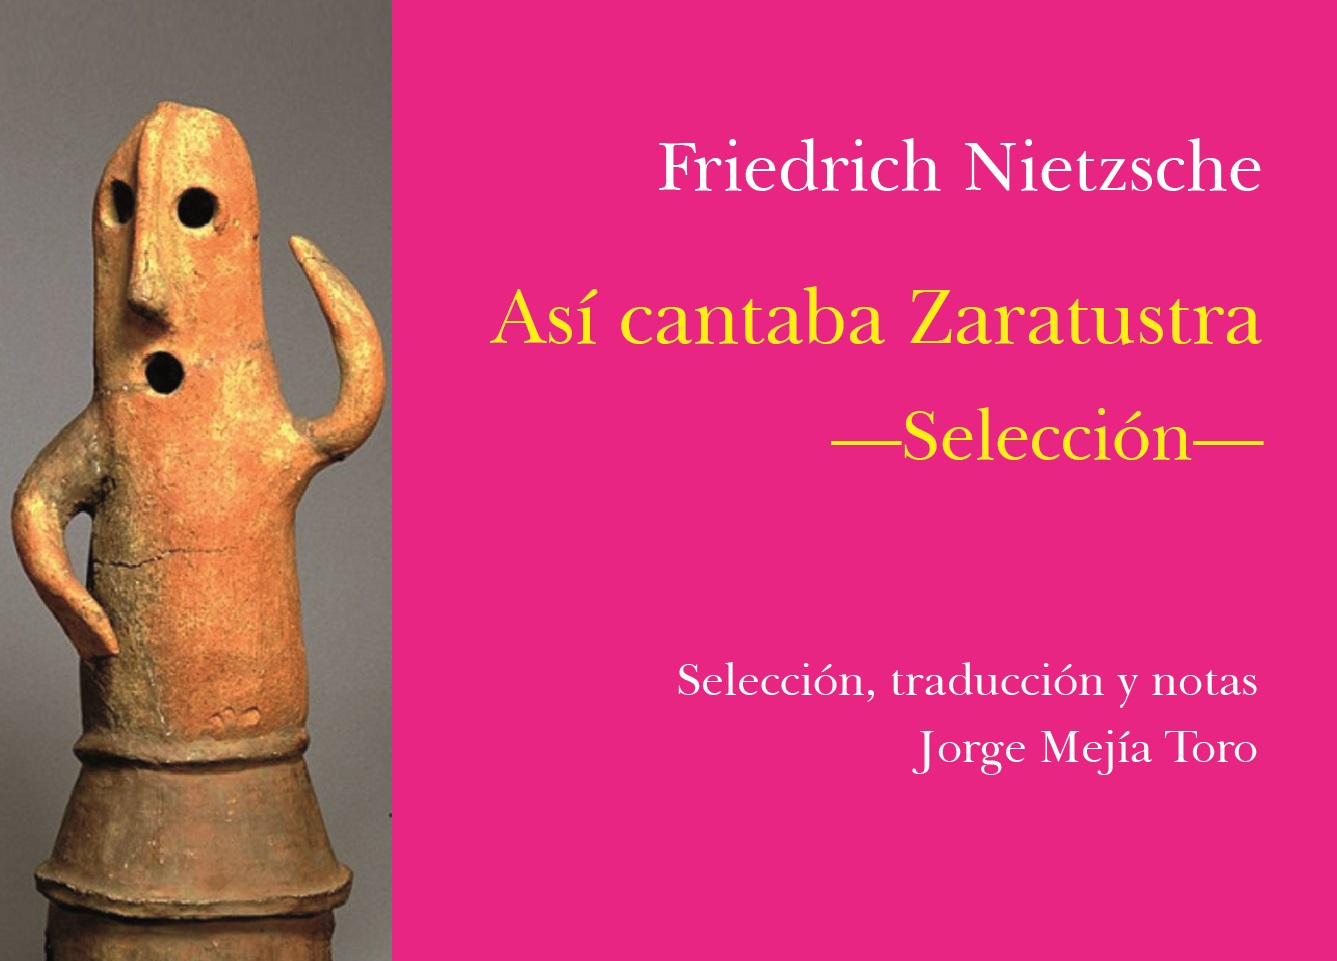 Disfruta de la lectura de Carlos Andrés Jaramillo sobre el libro Así cantaba Zaratrusta